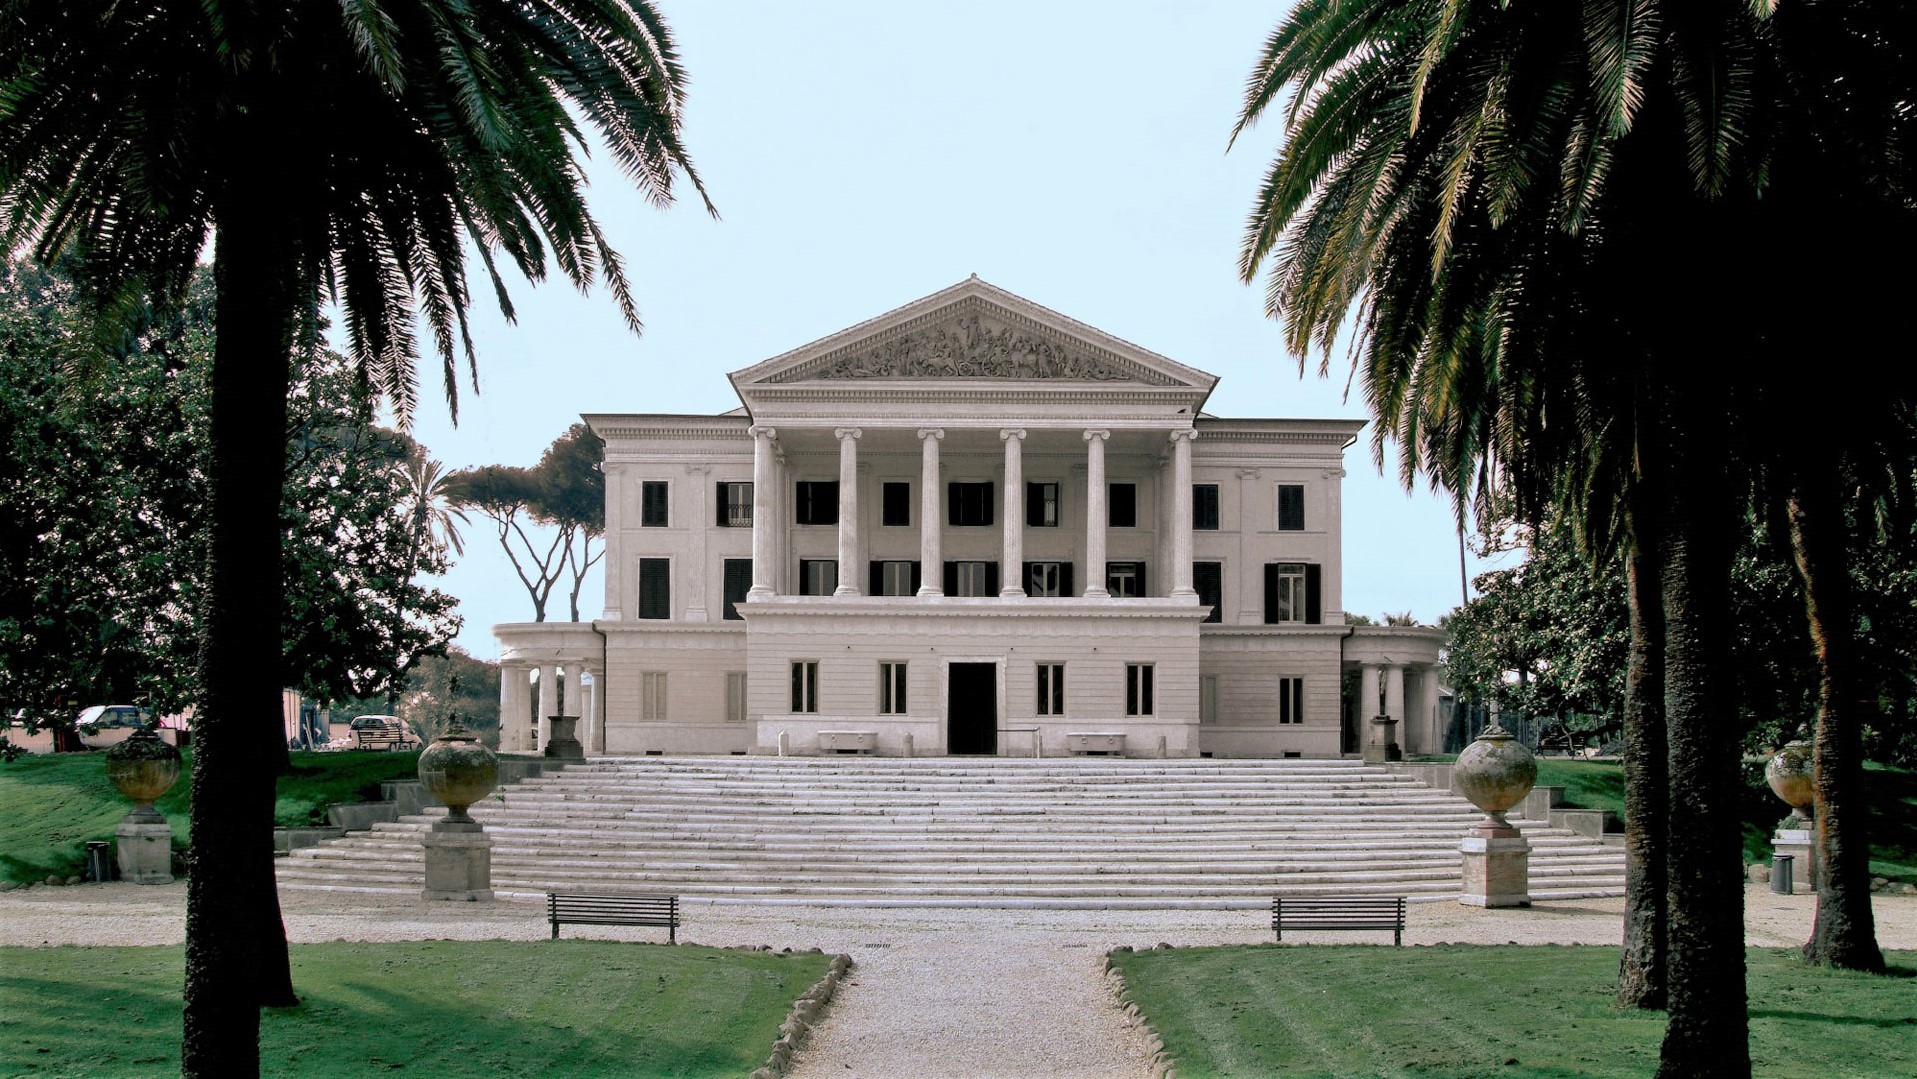 Villa Torlonia, Un Piccolo Grande Parco Nel Cuore Di Roma